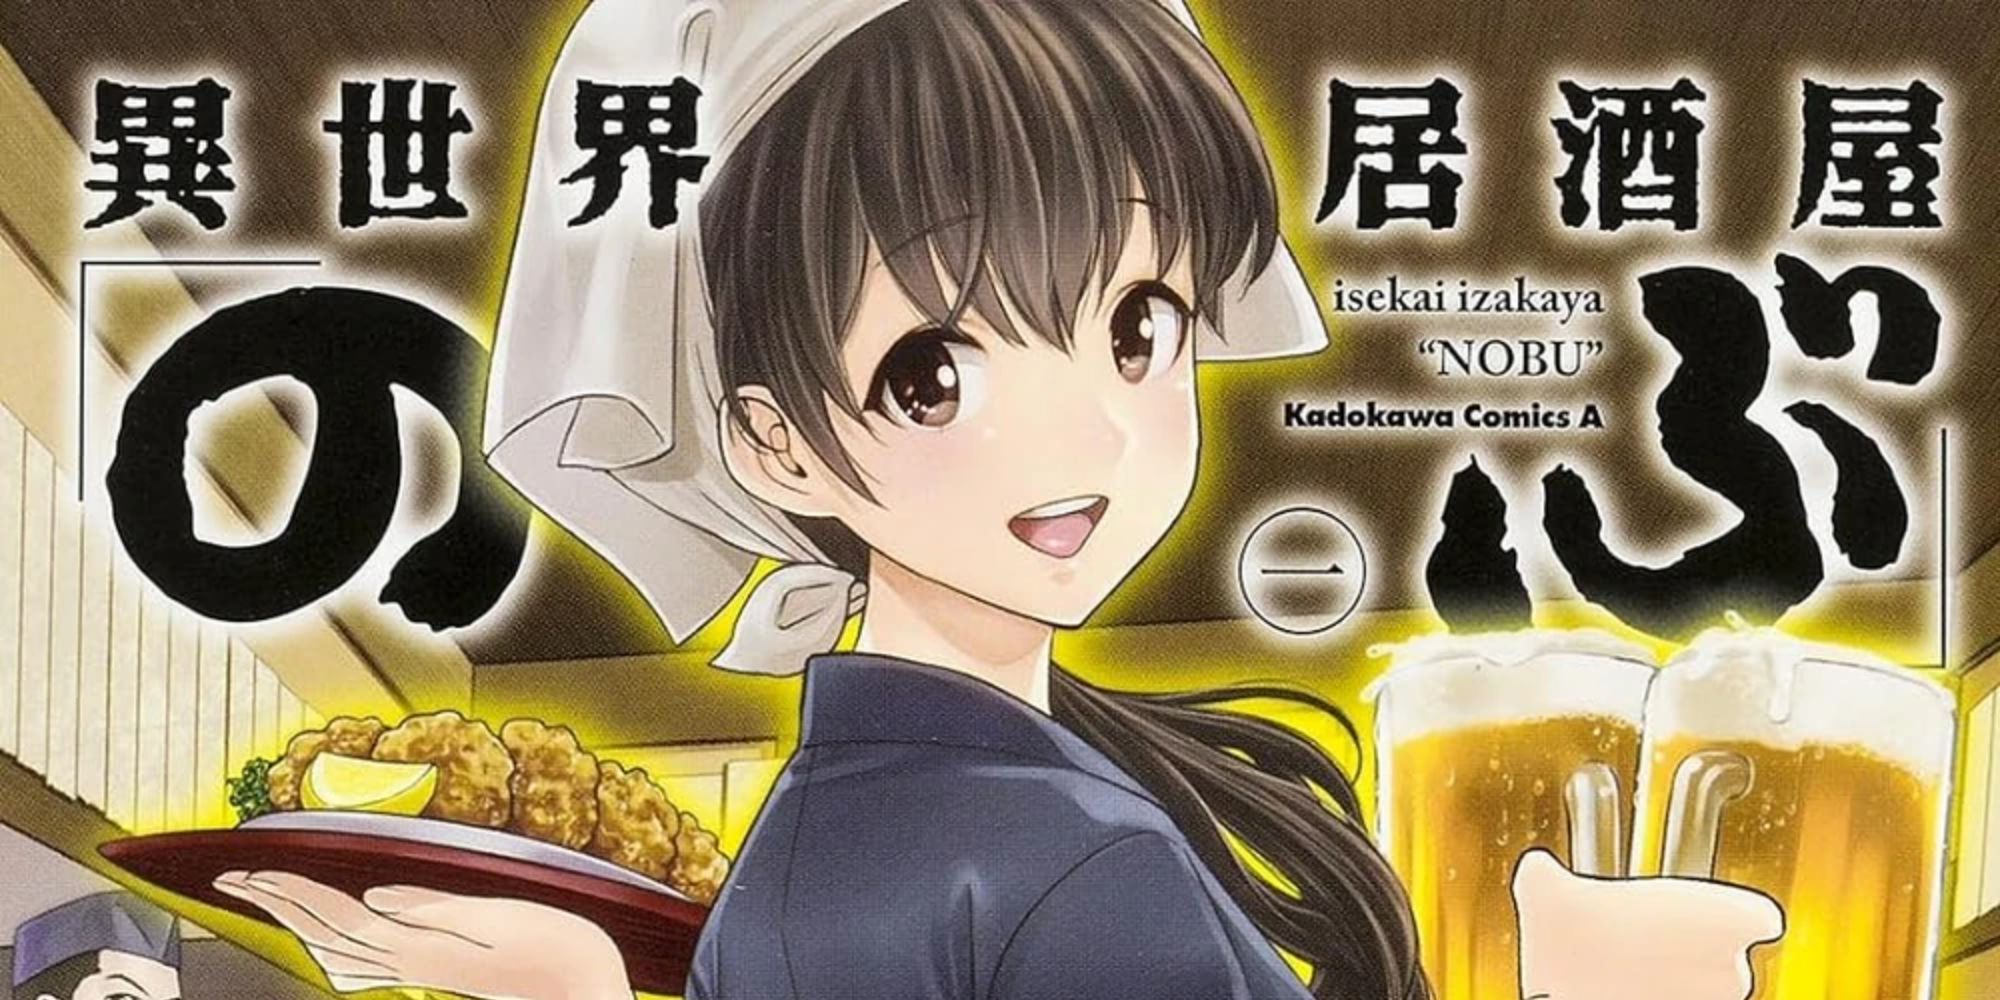 An Image of Isekai Manga Isekai Izakaya Nobu